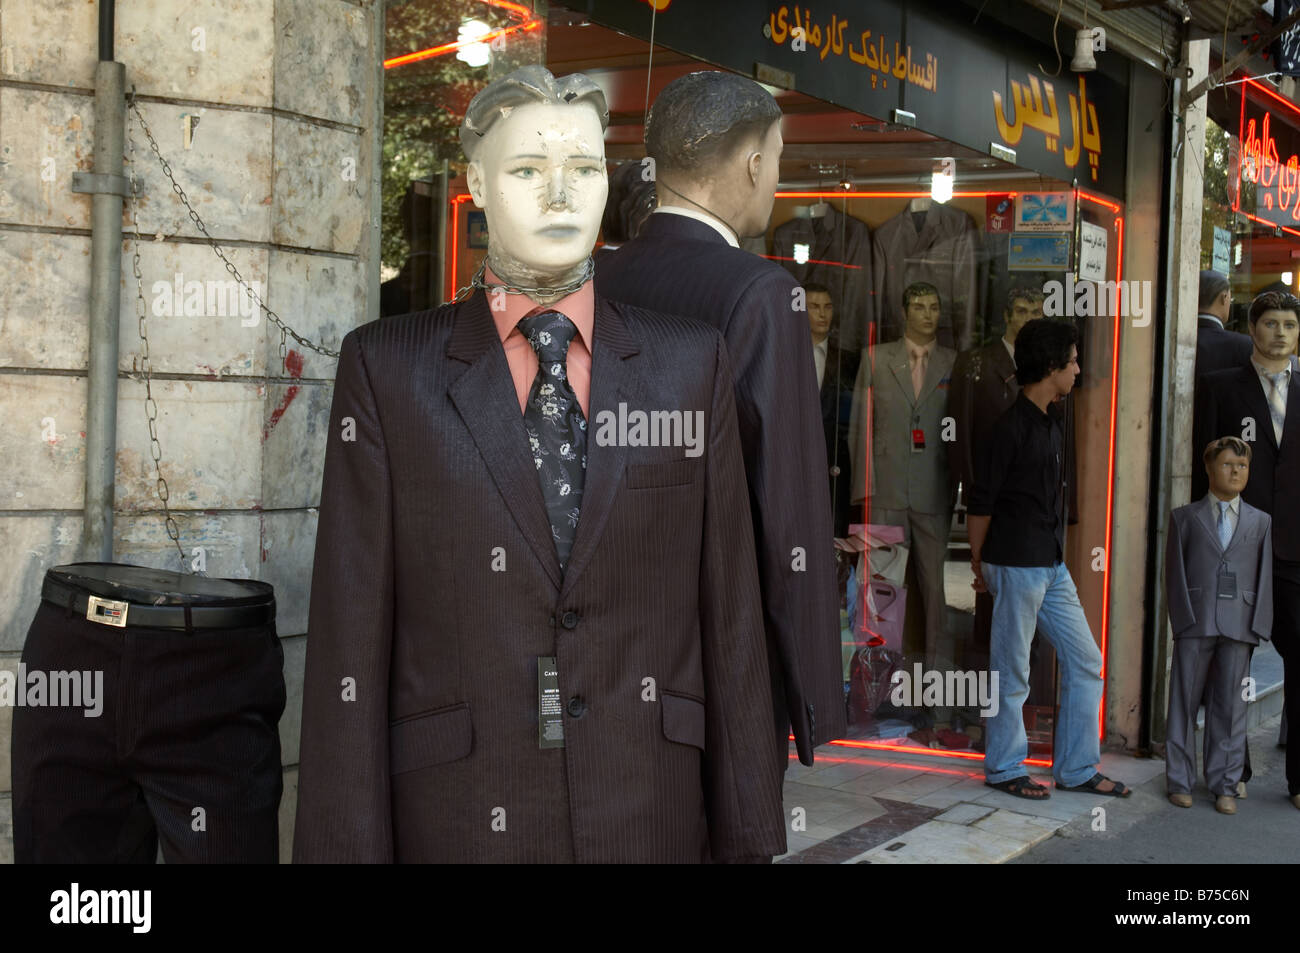 Il manichino indossa western indossare giacca e cravatta con un naso rotto e testa danneggiata, incatenato ad un tubo esterno di un negozio a Teheran. Foto Stock